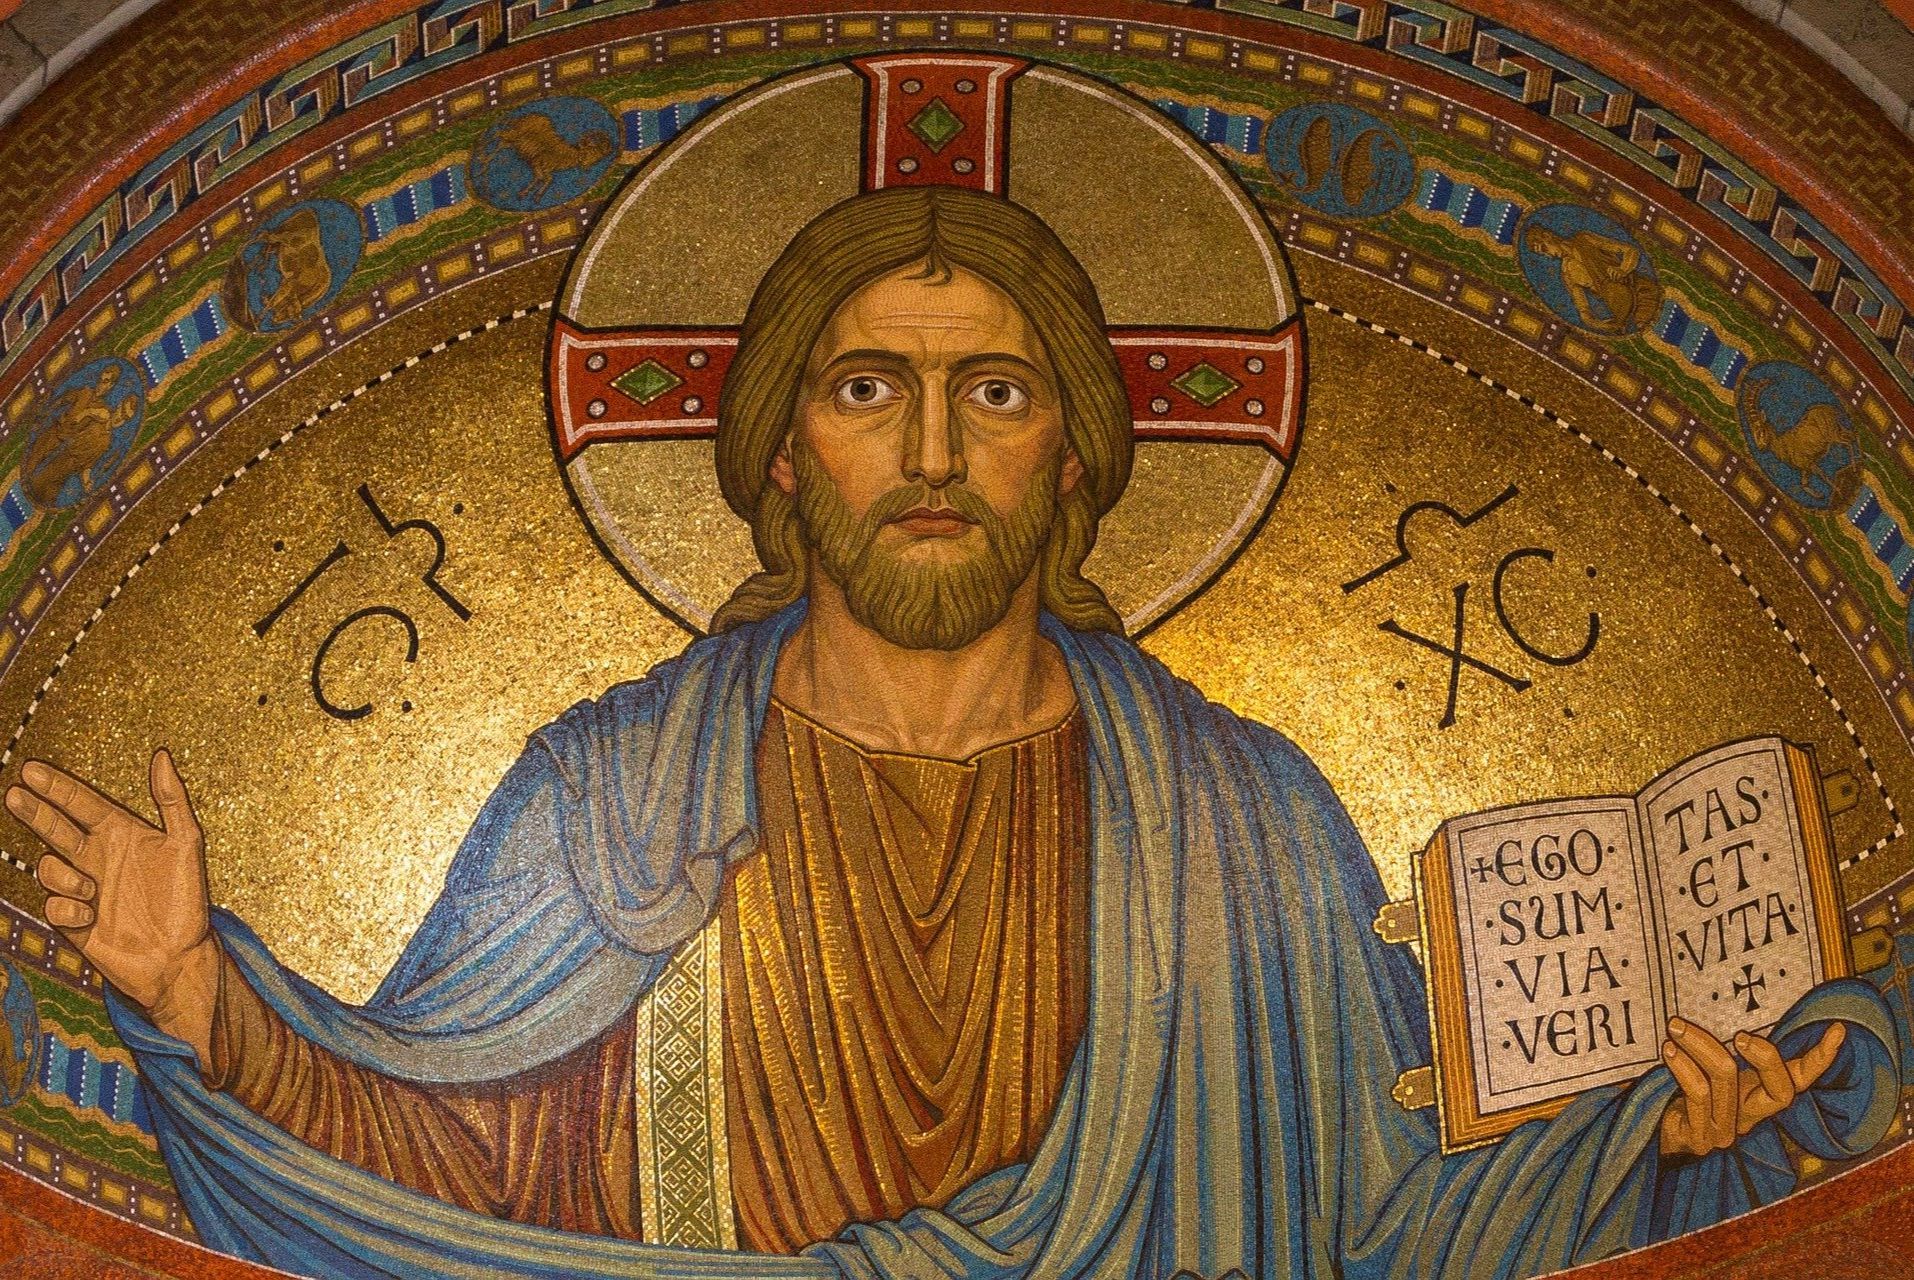 fresque ancienne de Christ en vérité - Image par Thomas B. de Pixabay